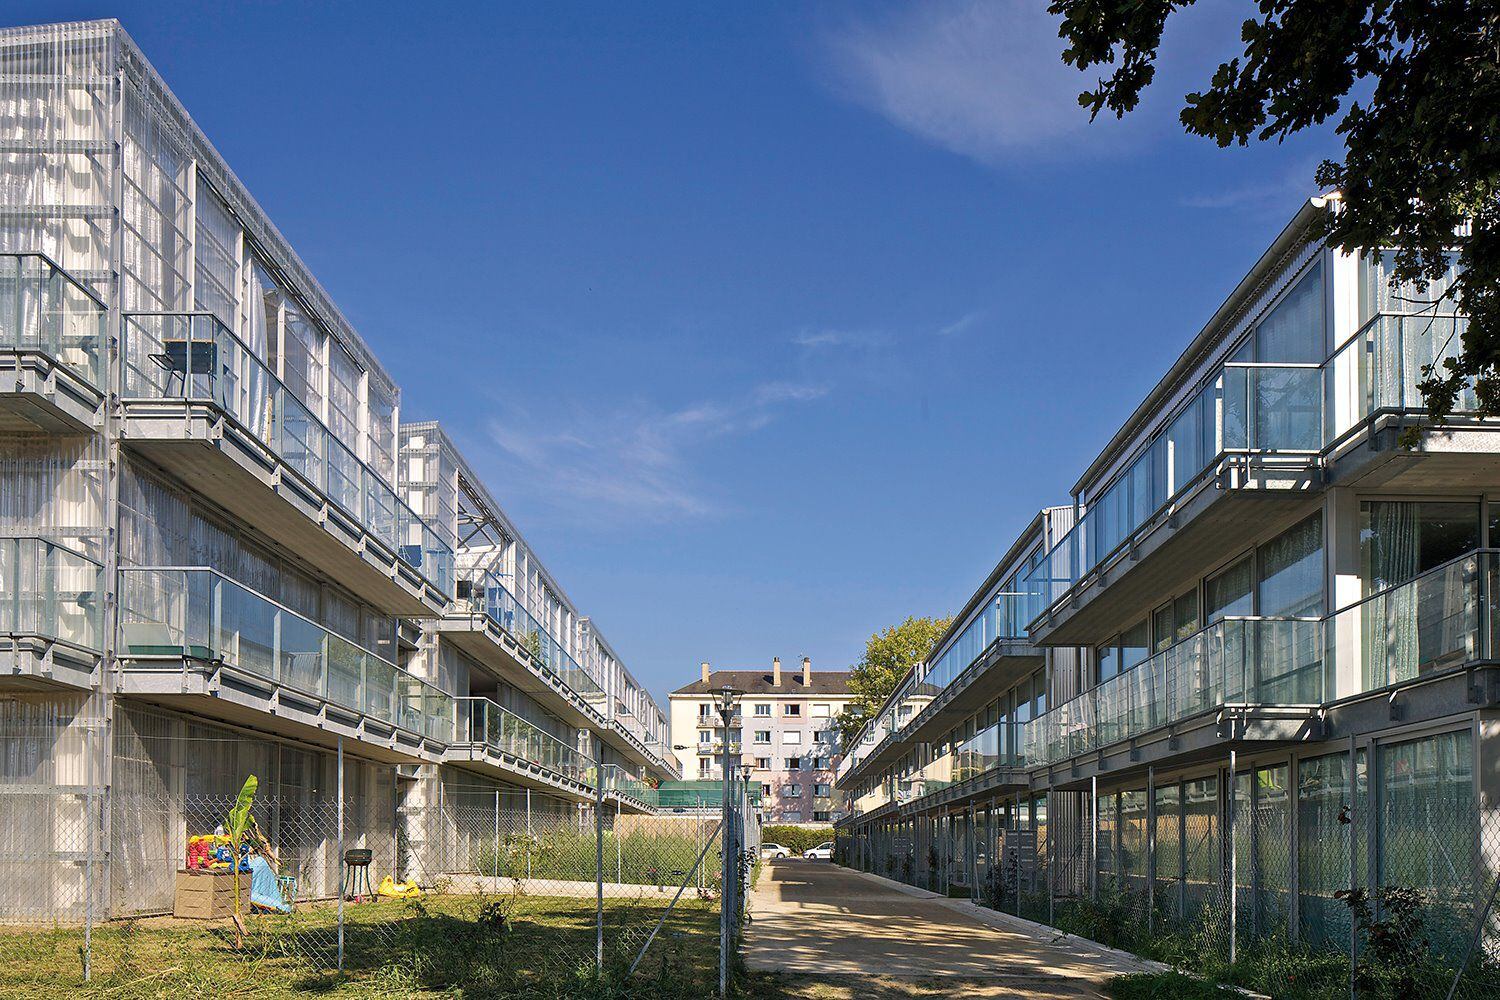 Esta promoción de vivienda social en Saint-Nazaire (2011) consiste en 53 apartamentos organizados en edificios de tres plantas. Las viviendas en planta baja disponen de jardín privado, mientras que las de los pisos superiores disfrutan de balcones o galerías cubiertas. Foto: Tomada de arquitecturaydiseno.es.